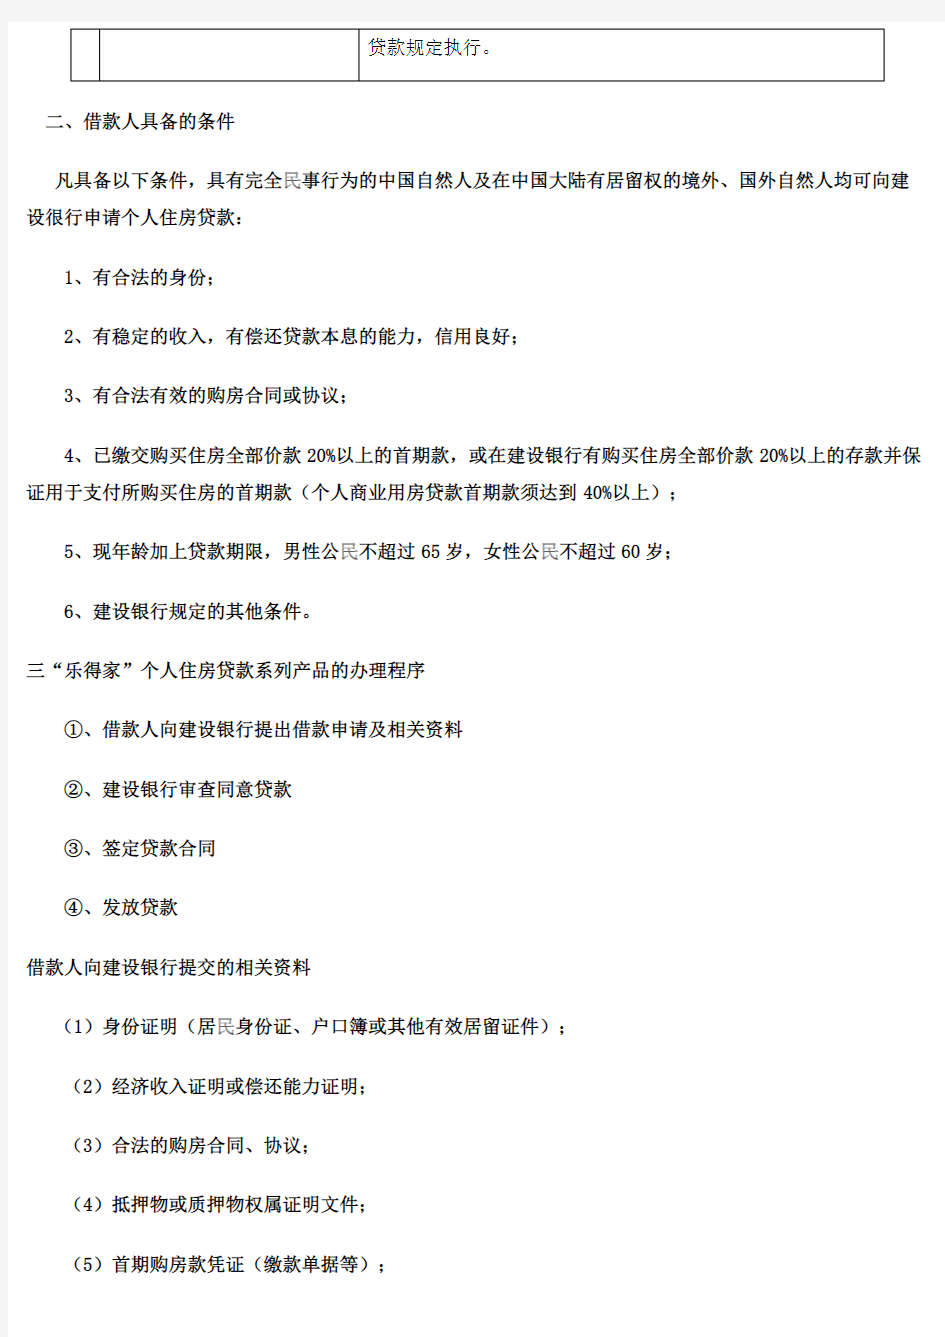 中国建设银行个人住房贷款系列产品-推荐下载